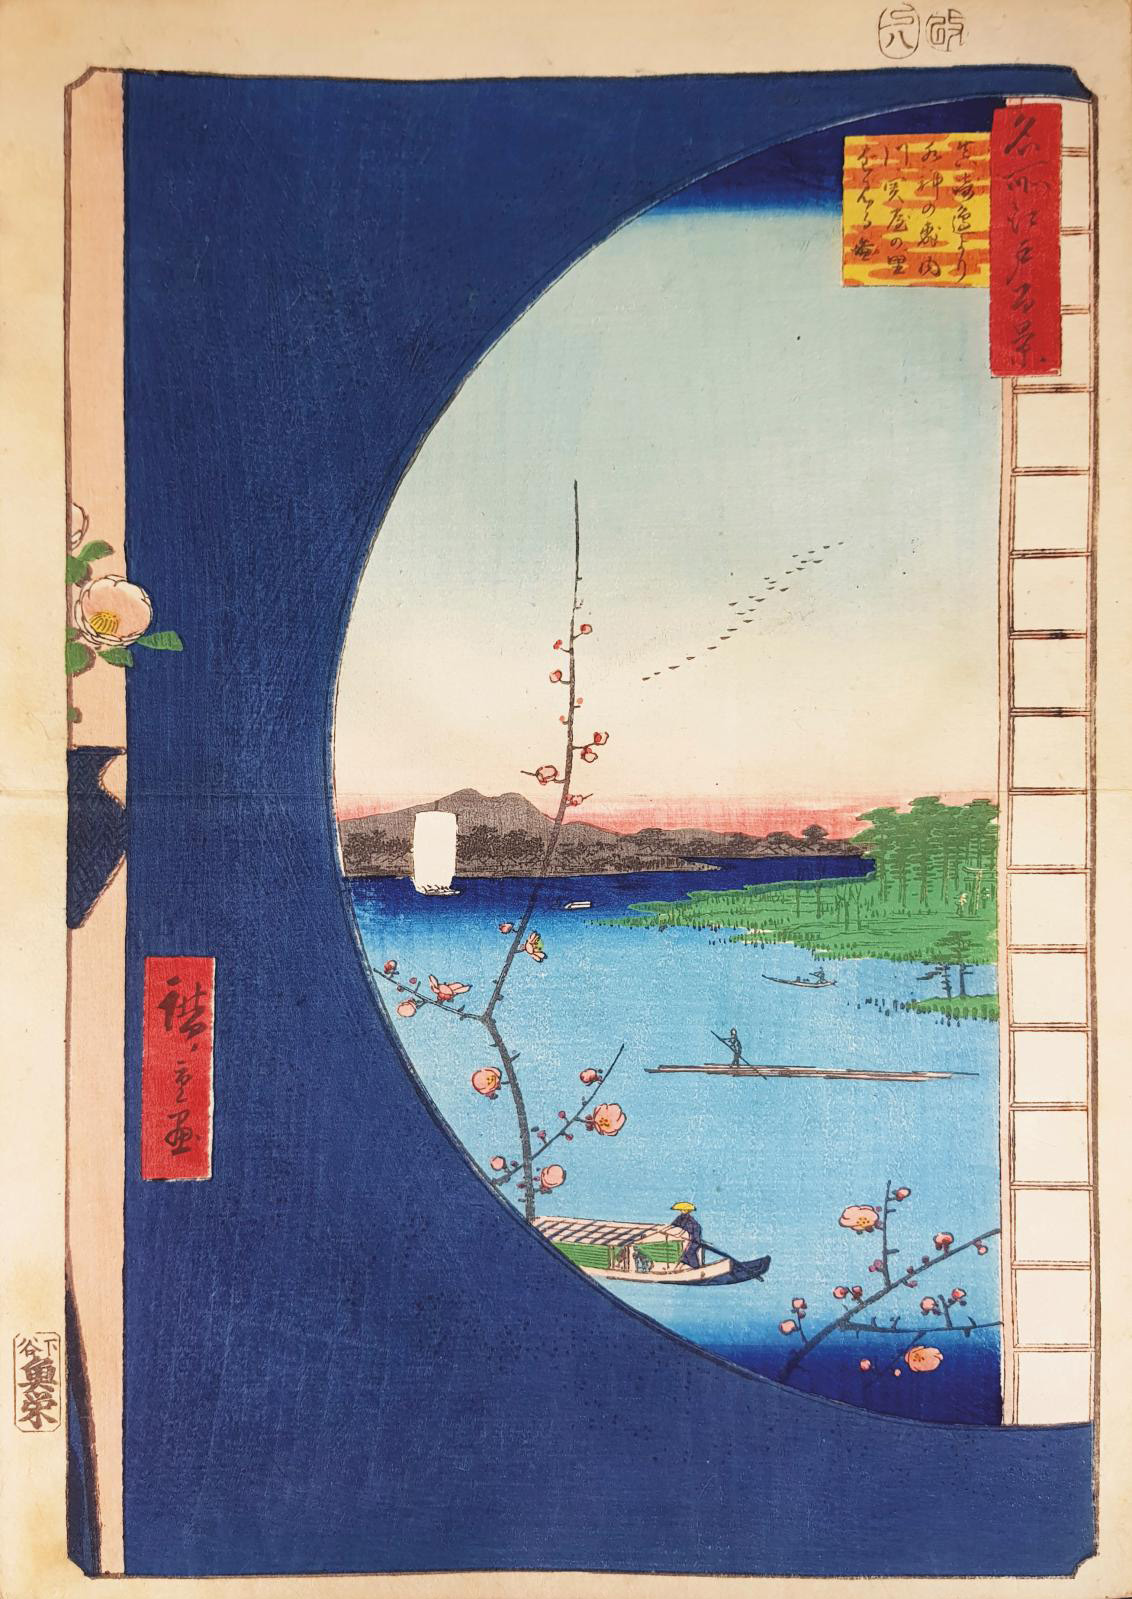 The Floating World of Utagawa Hiroshige